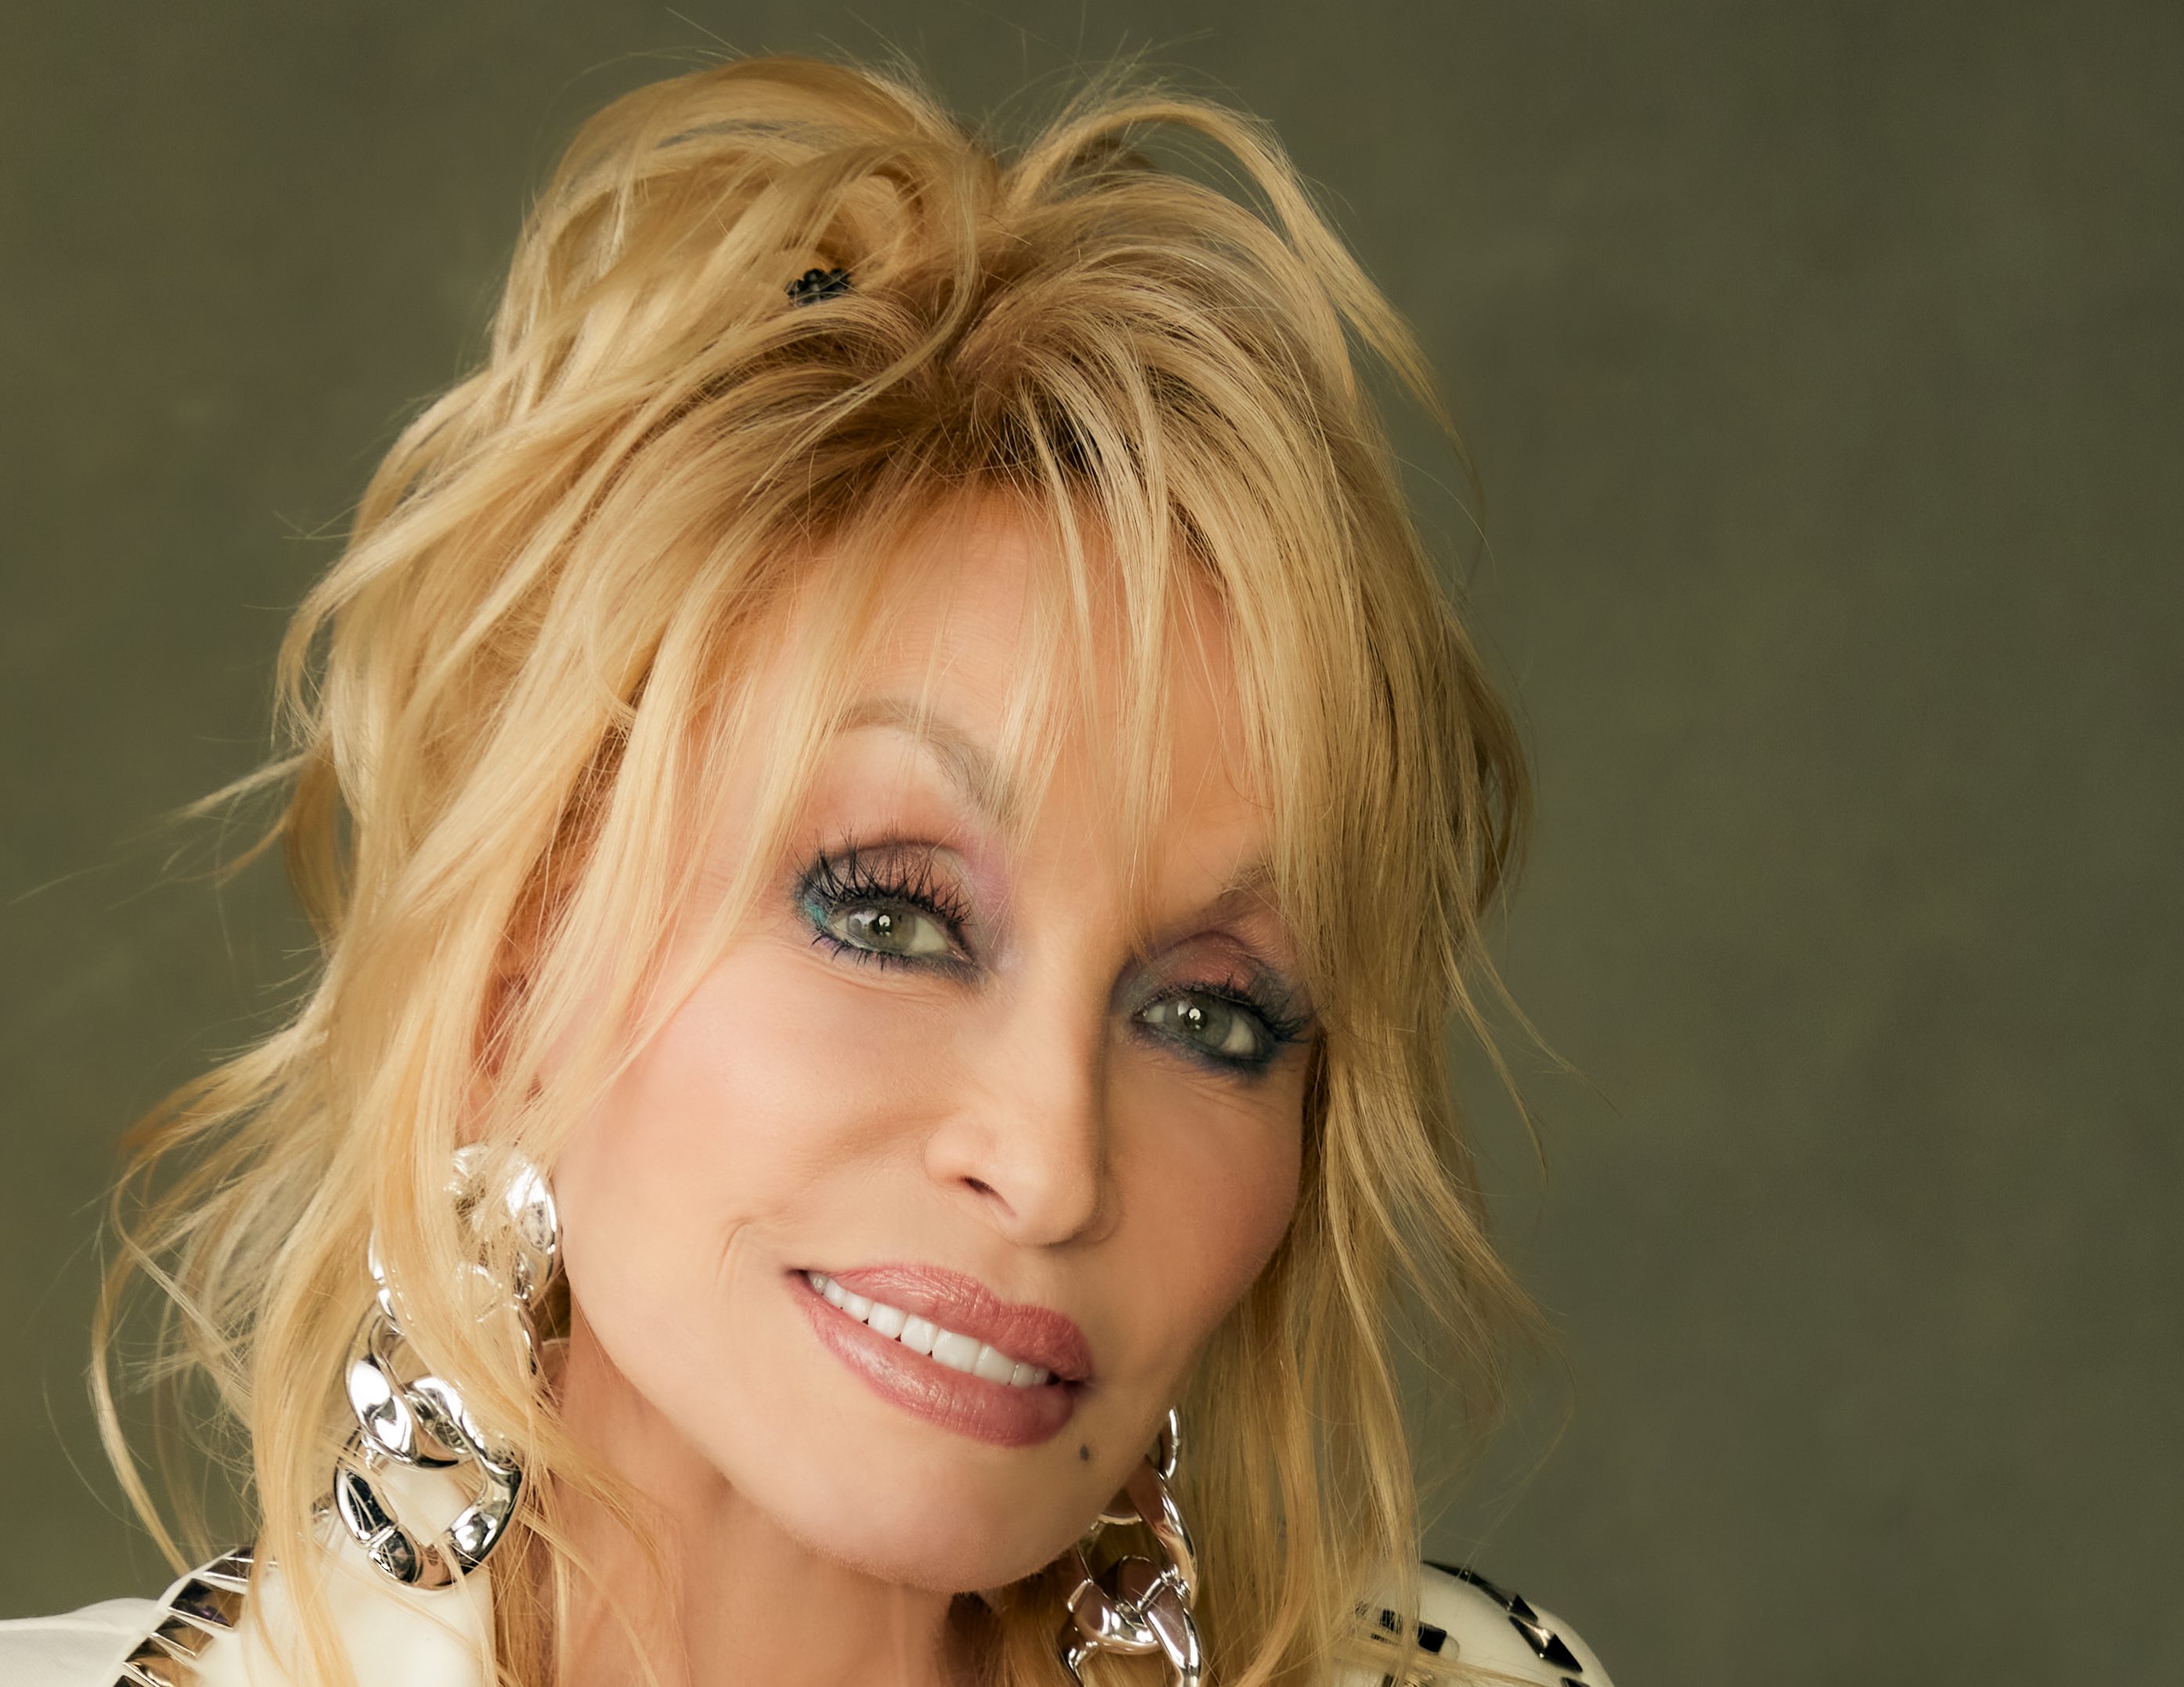 Dolly Parton. Photo courtesy of Dolly Parton. Photo by Jim Wright